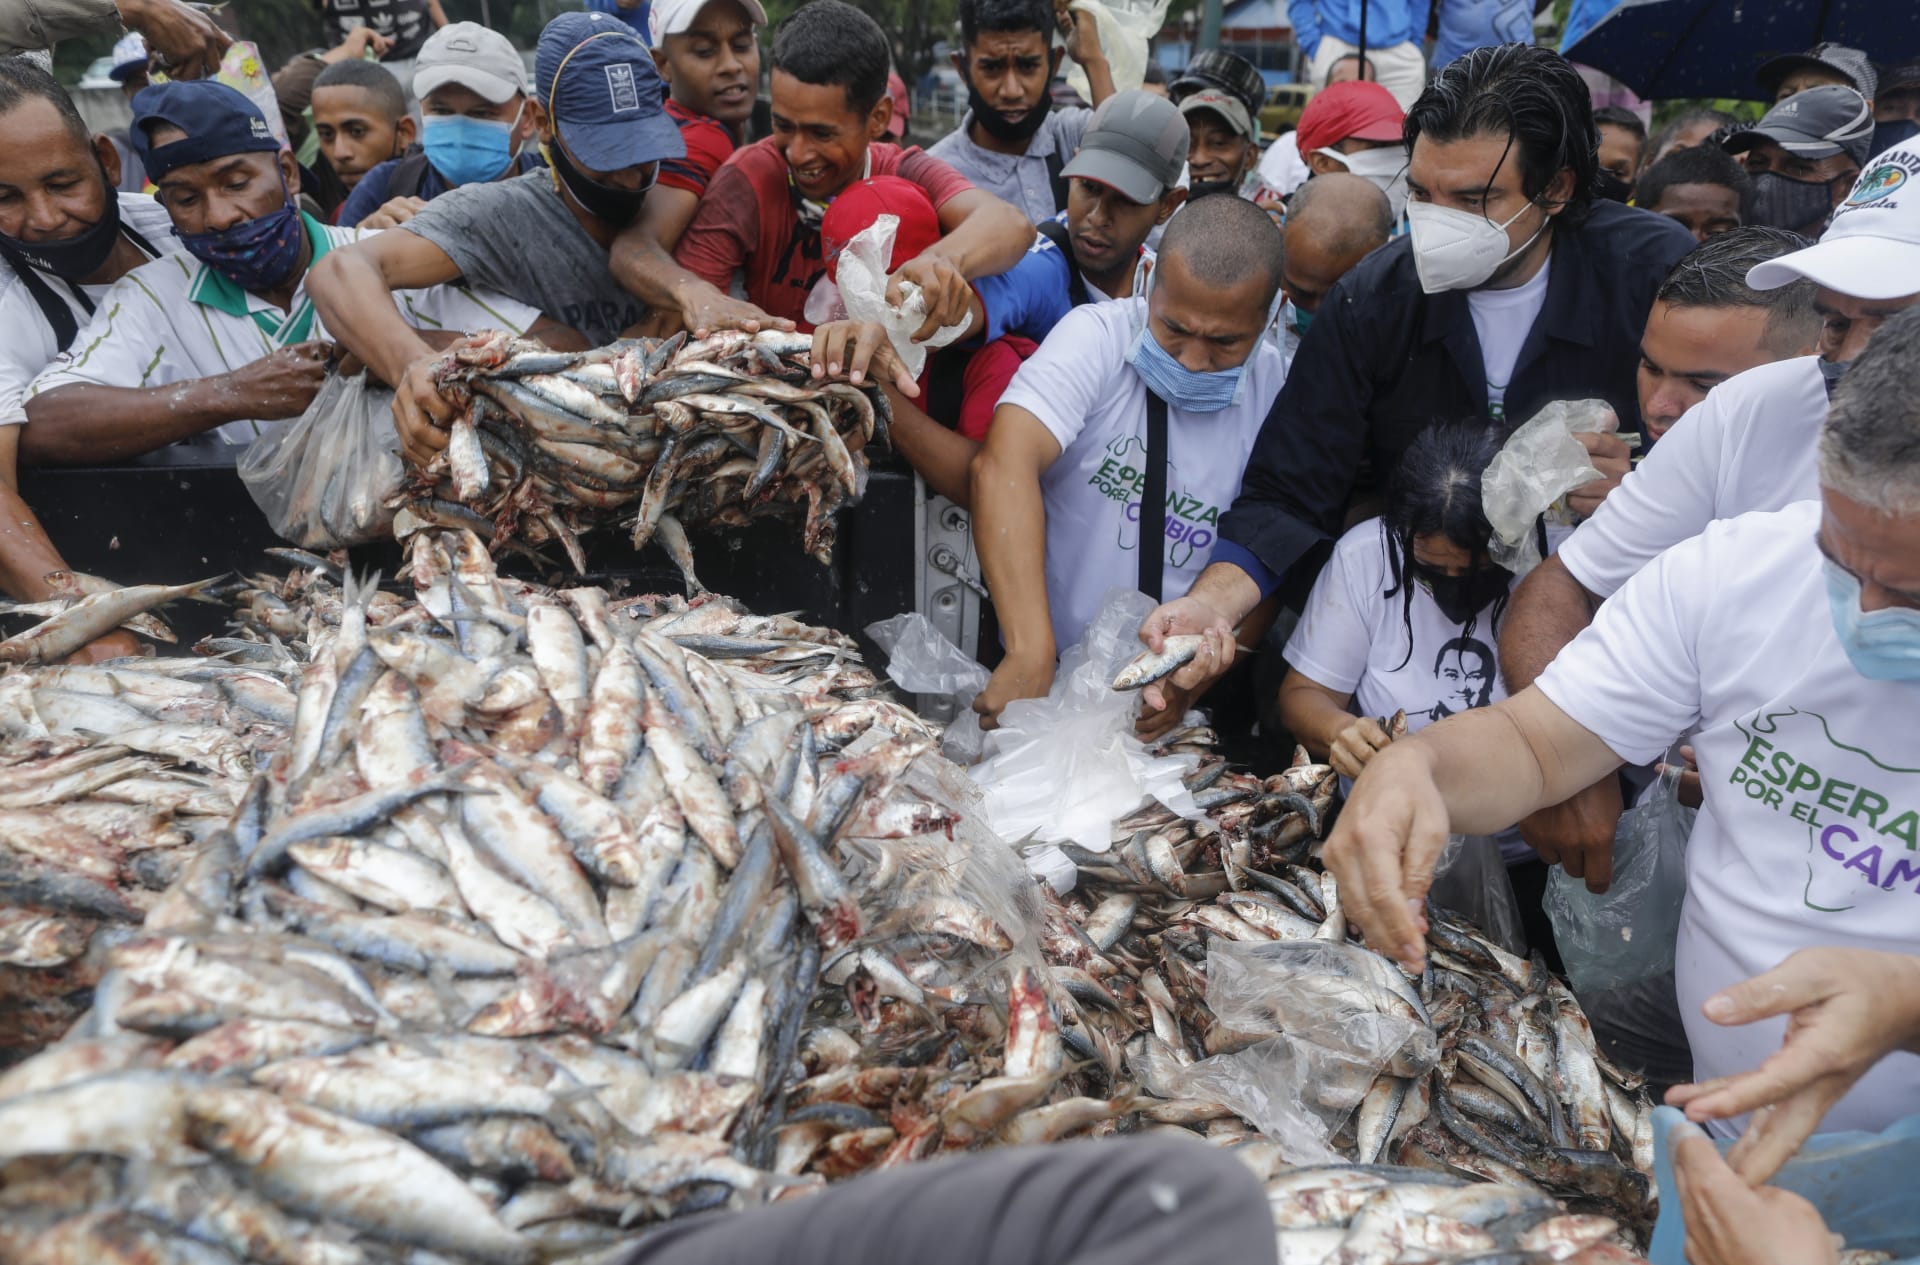 Venezuelané si nabírají ryby, které jim v rámci kampaně před nedělními volbami věnovali zástupci opozice.